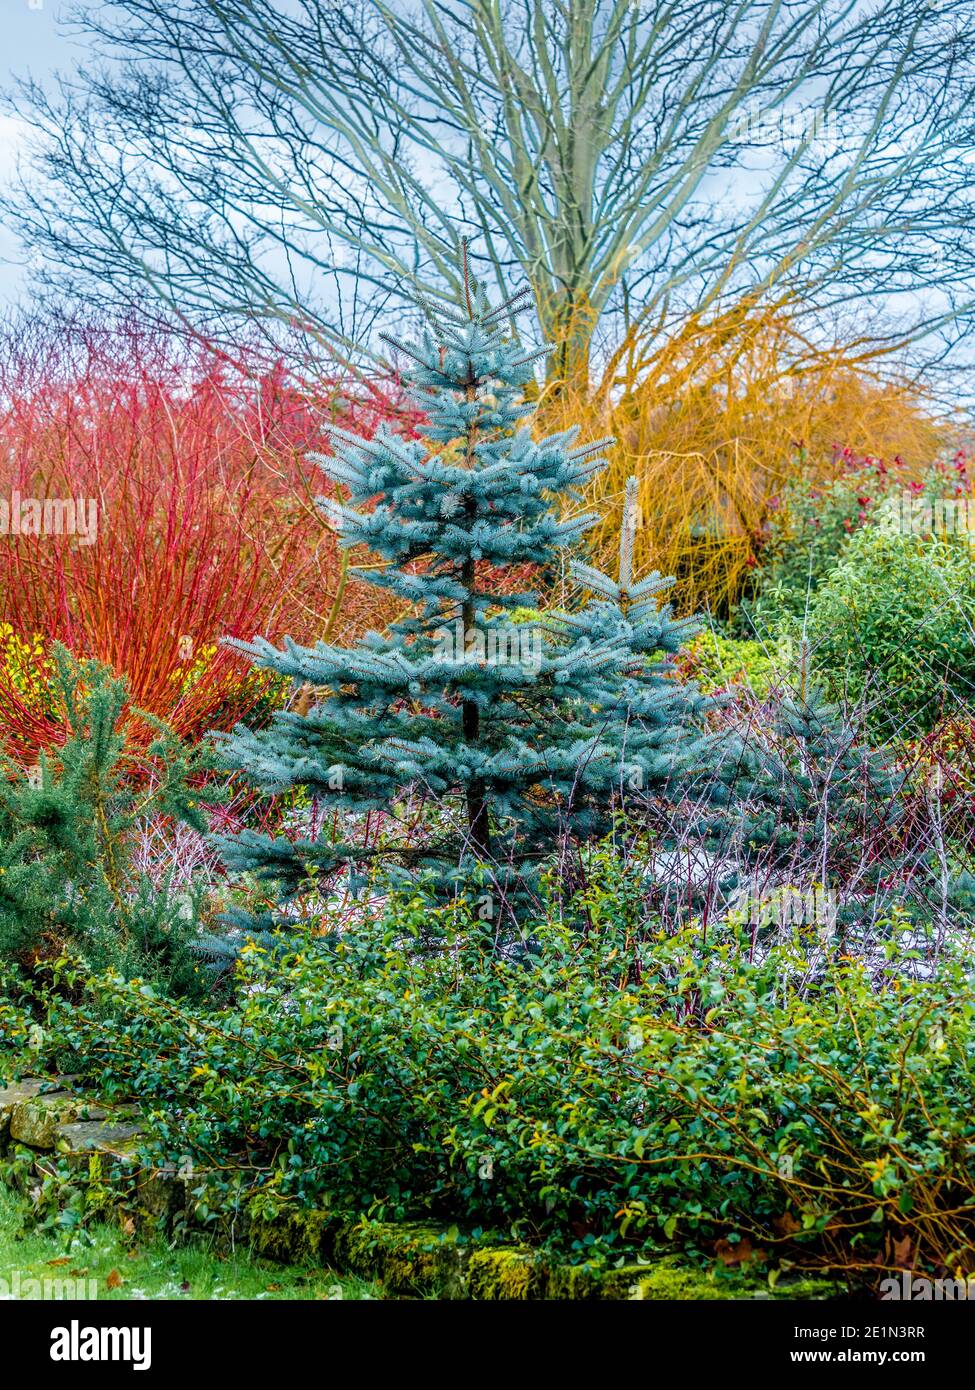 Blaugrünes Laub einer Tanne mit bunten Stielen von Cornas Alba und Salix Alba im Hintergrund. Bereitstellung von Wintergartenfarbe. Stockfoto